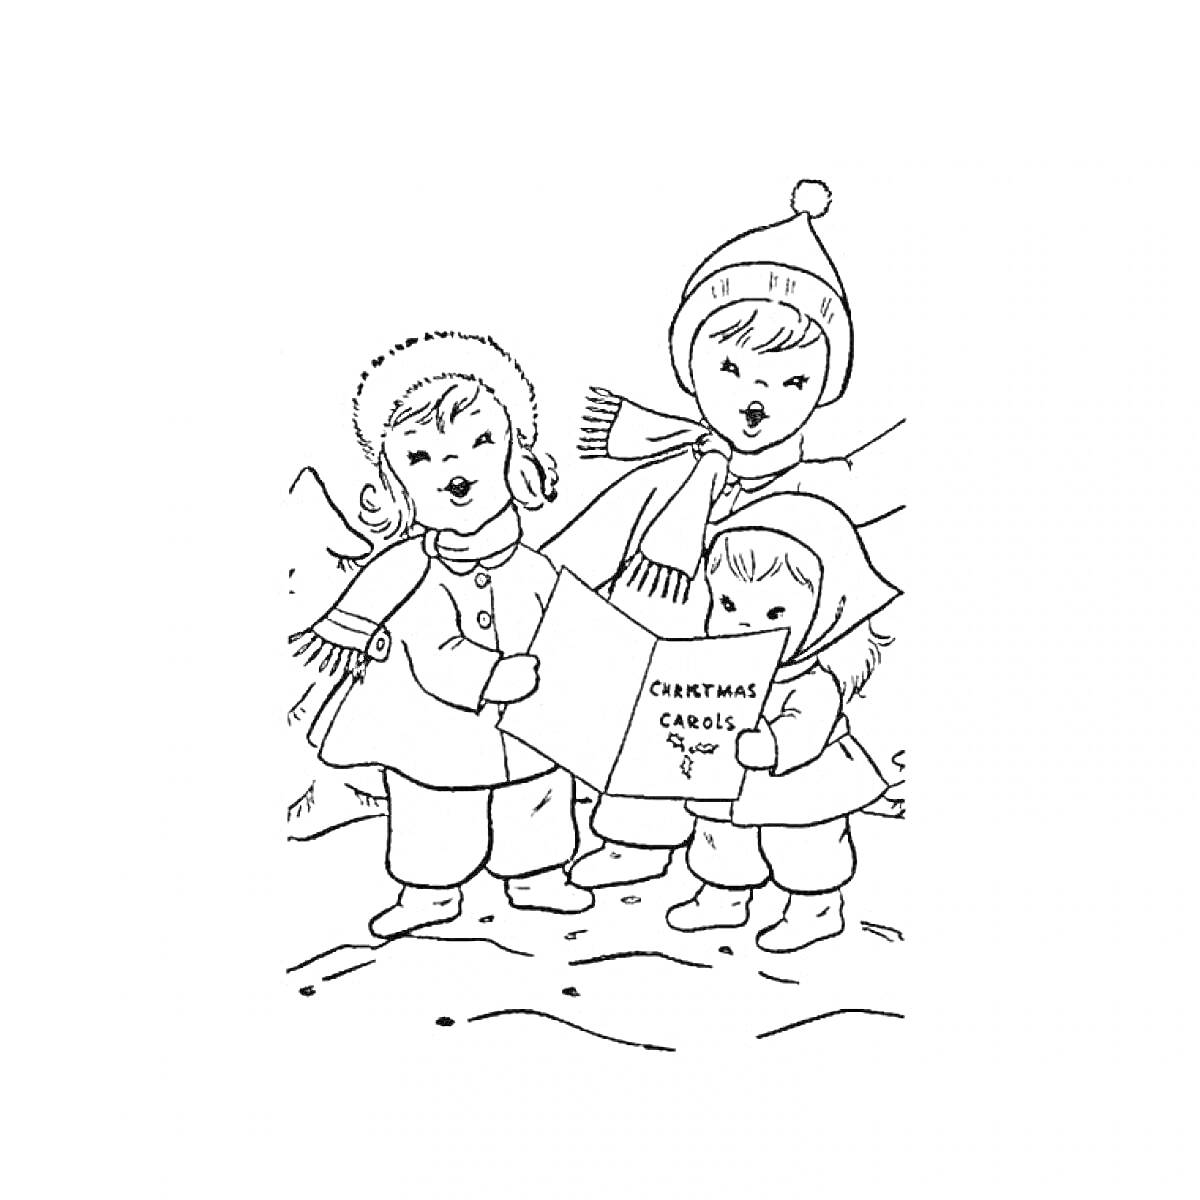 Дети поют колядки на Рождество: три ребенка, один мальчик и две девочки, одеты в зимнюю одежду - шапки, шарфы и куртки, держат книги с колядками